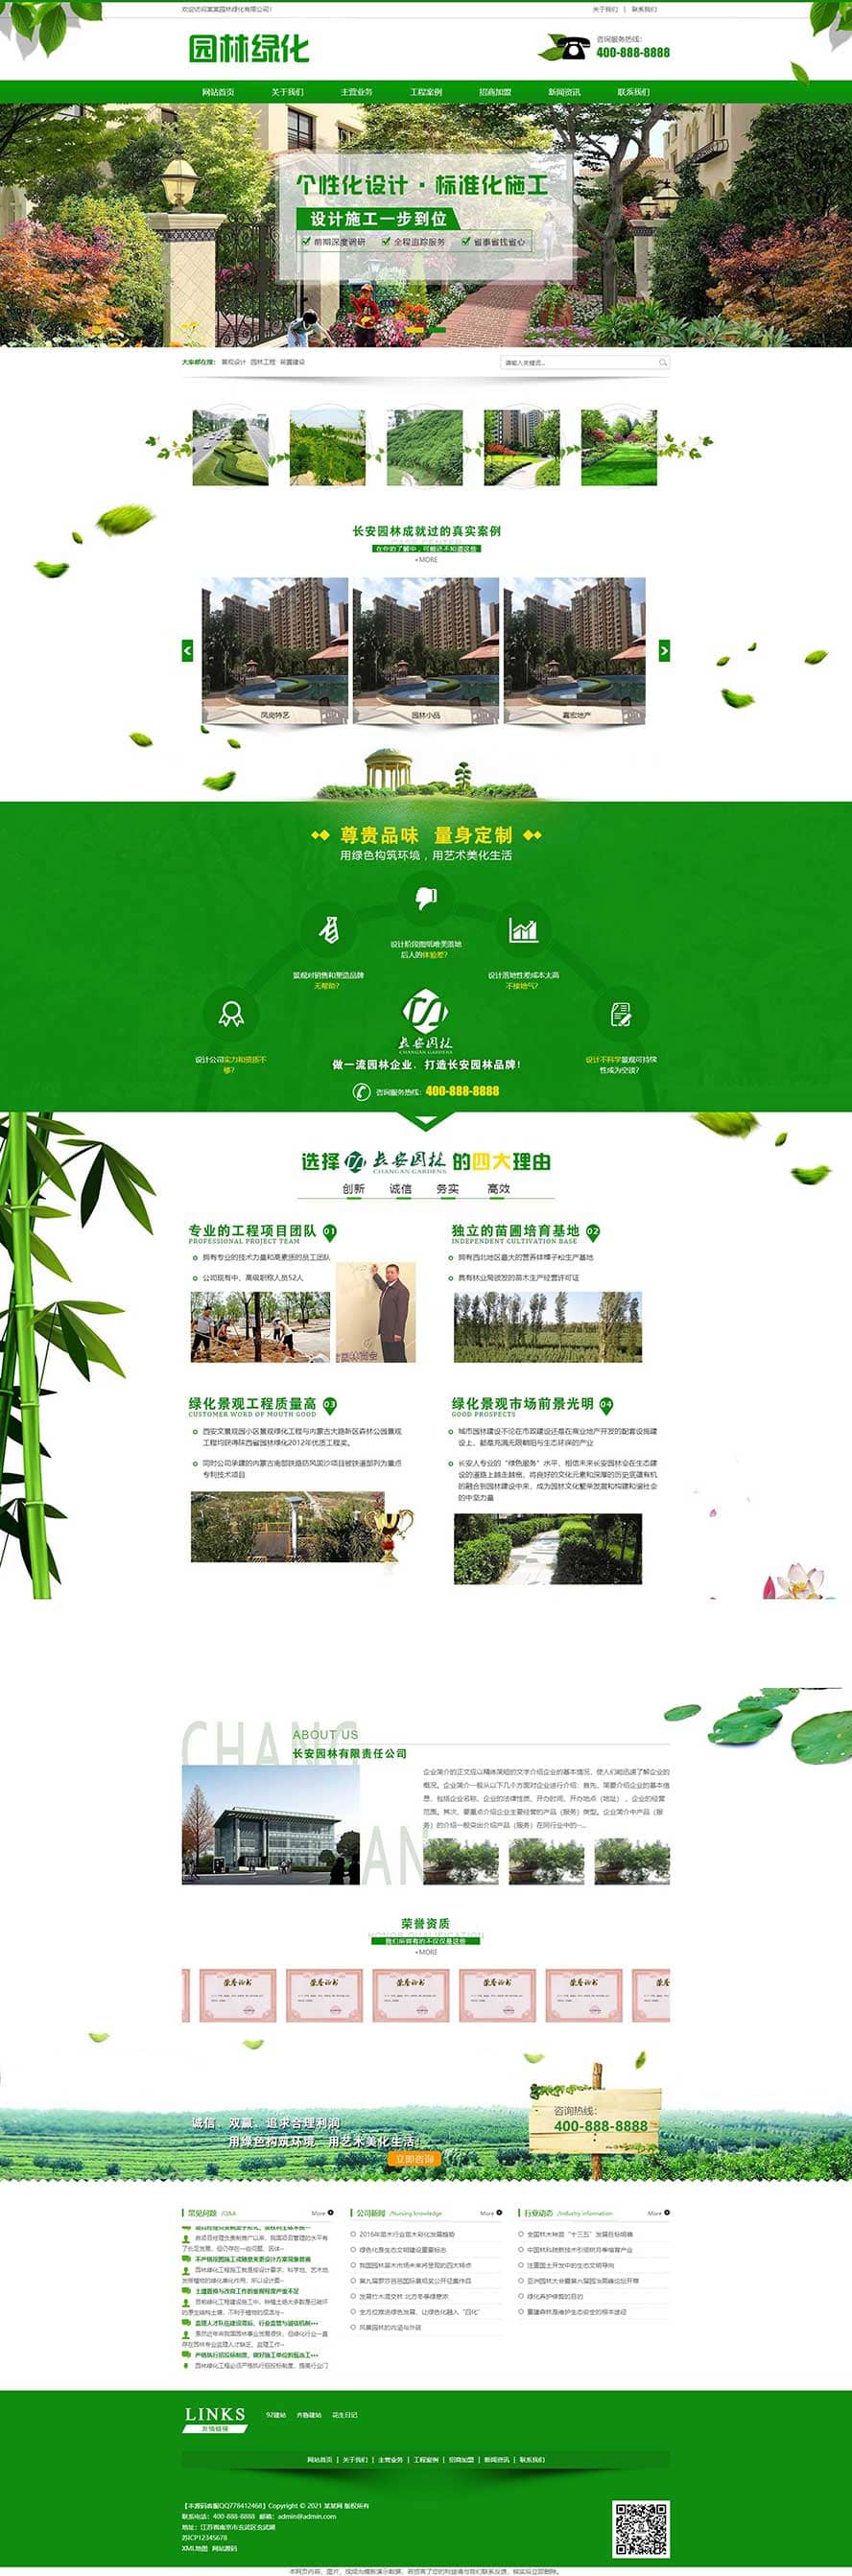 园林景观网站源码,景观设计网站源码,城市绿化网站源码